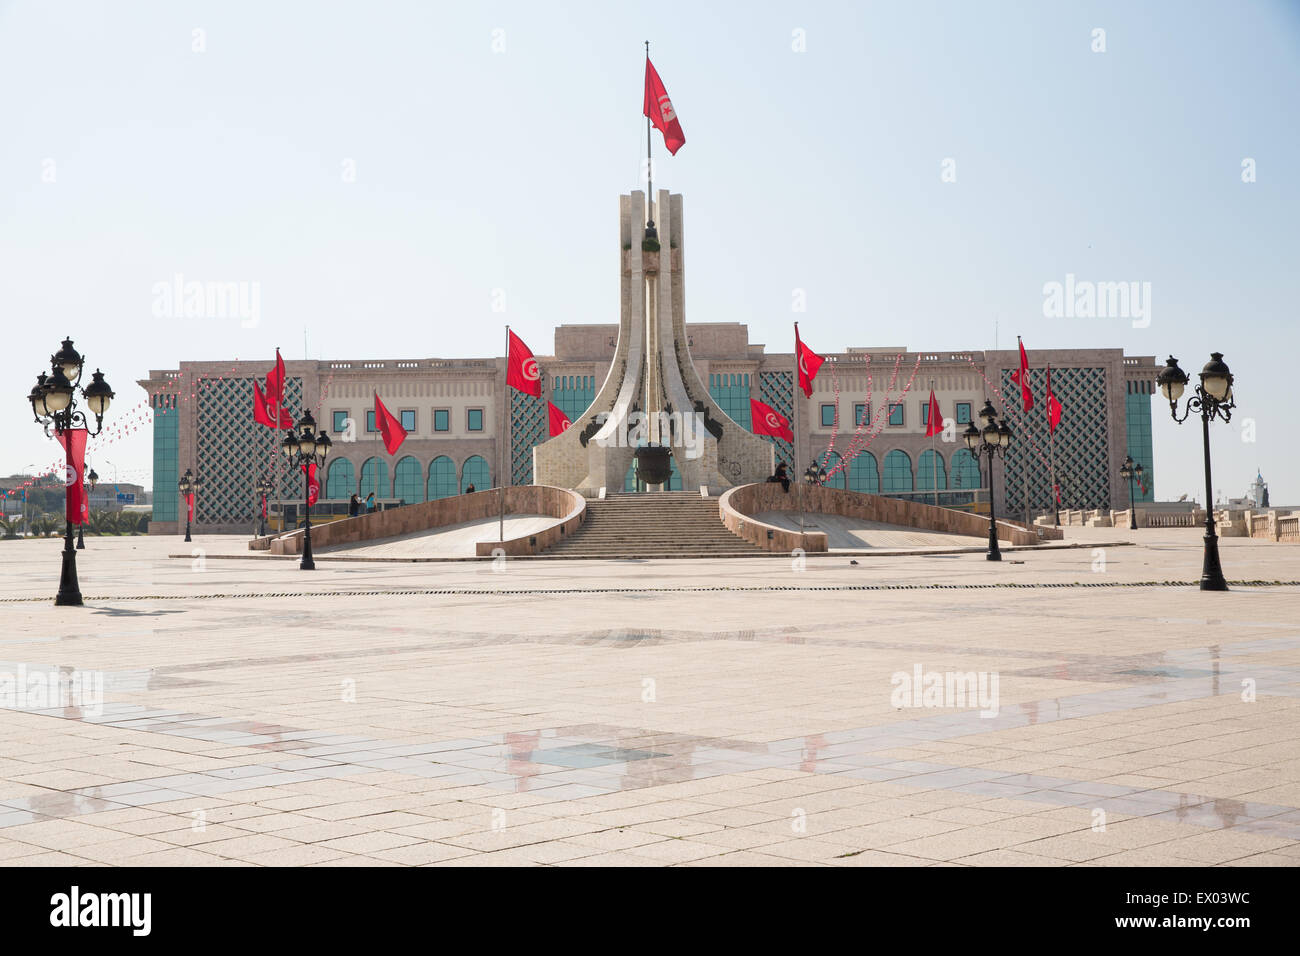 Parliament building, Tunis, Tunisia Stock Photo